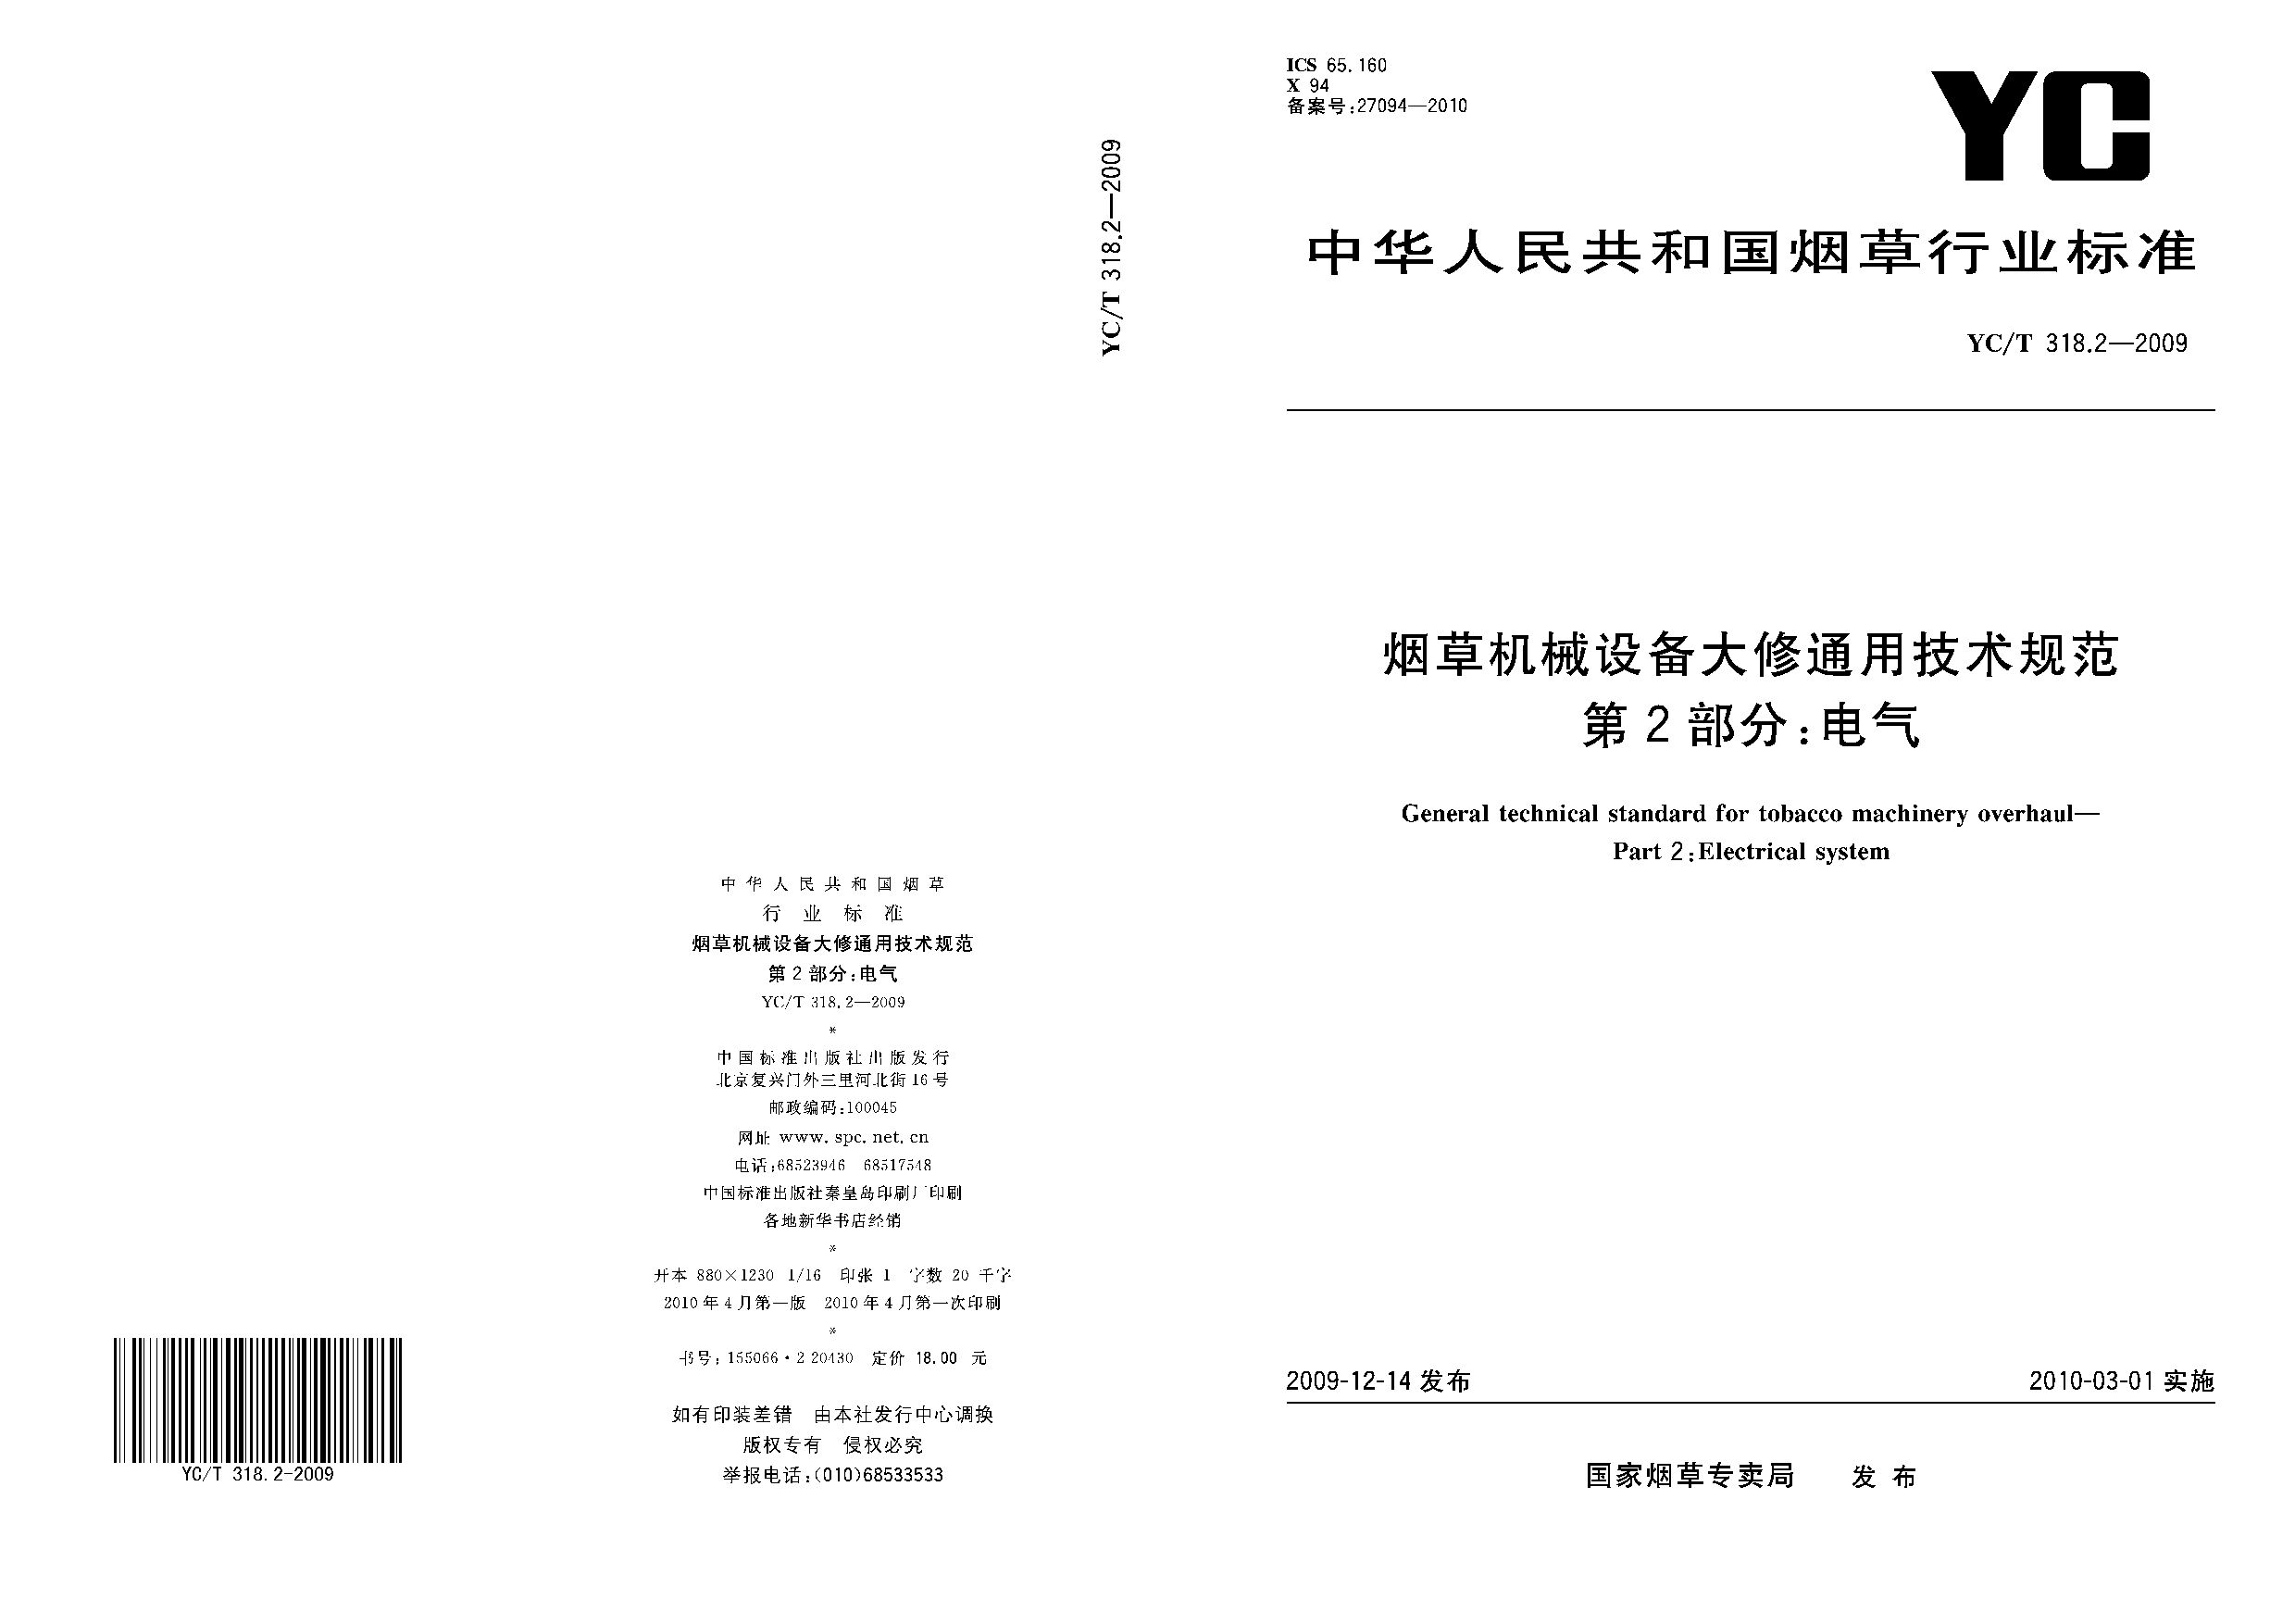 YC/T 318.2-2009封面图